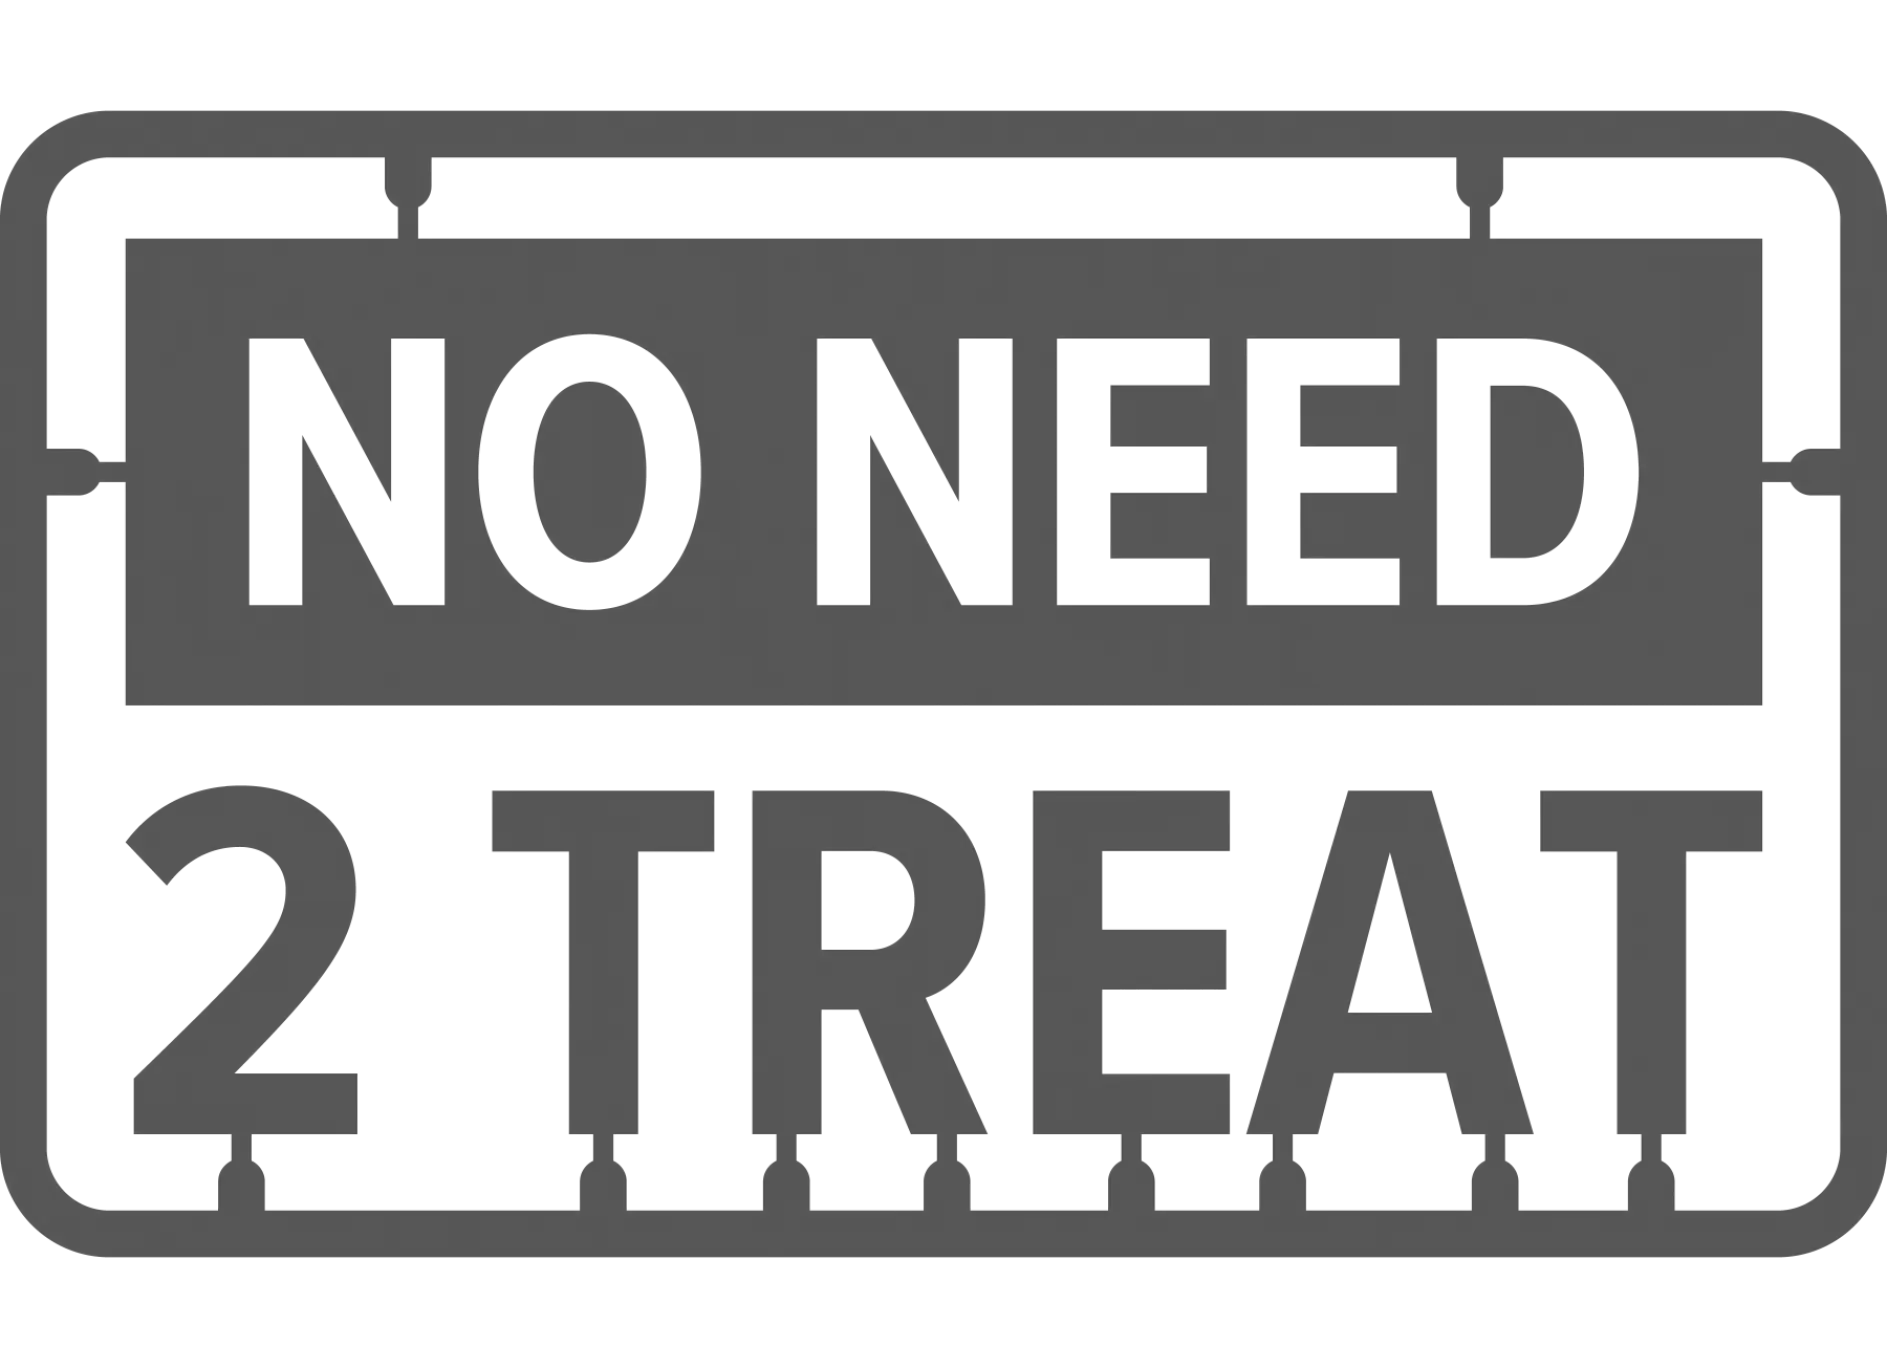 No need 2 treat